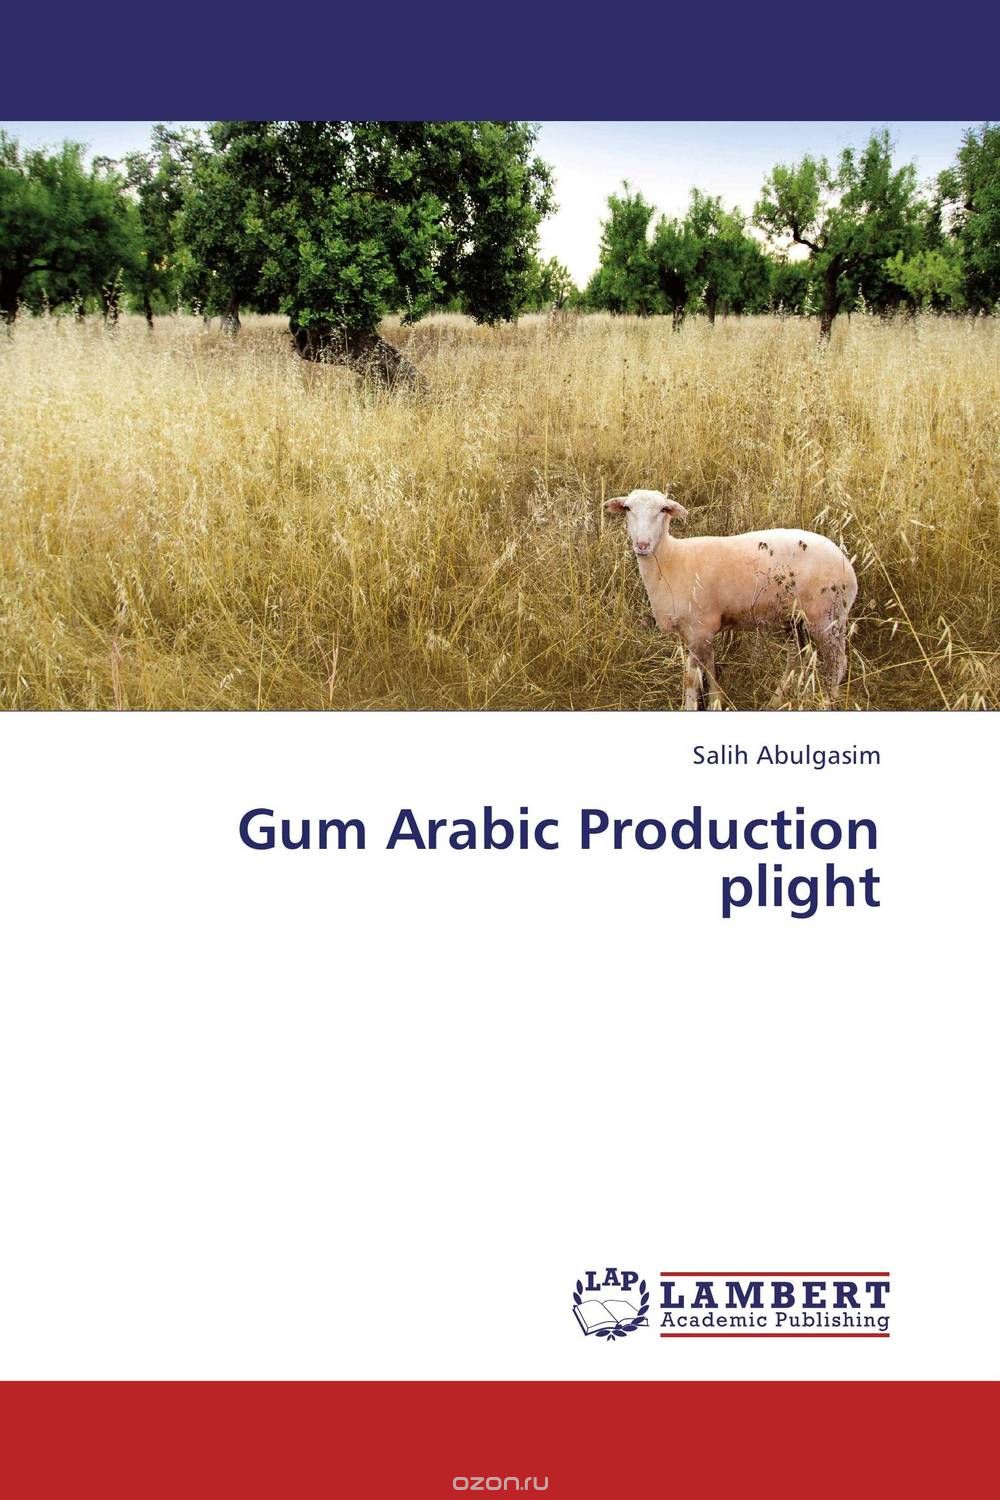 Скачать книгу "Gum  Arabic Production plight"